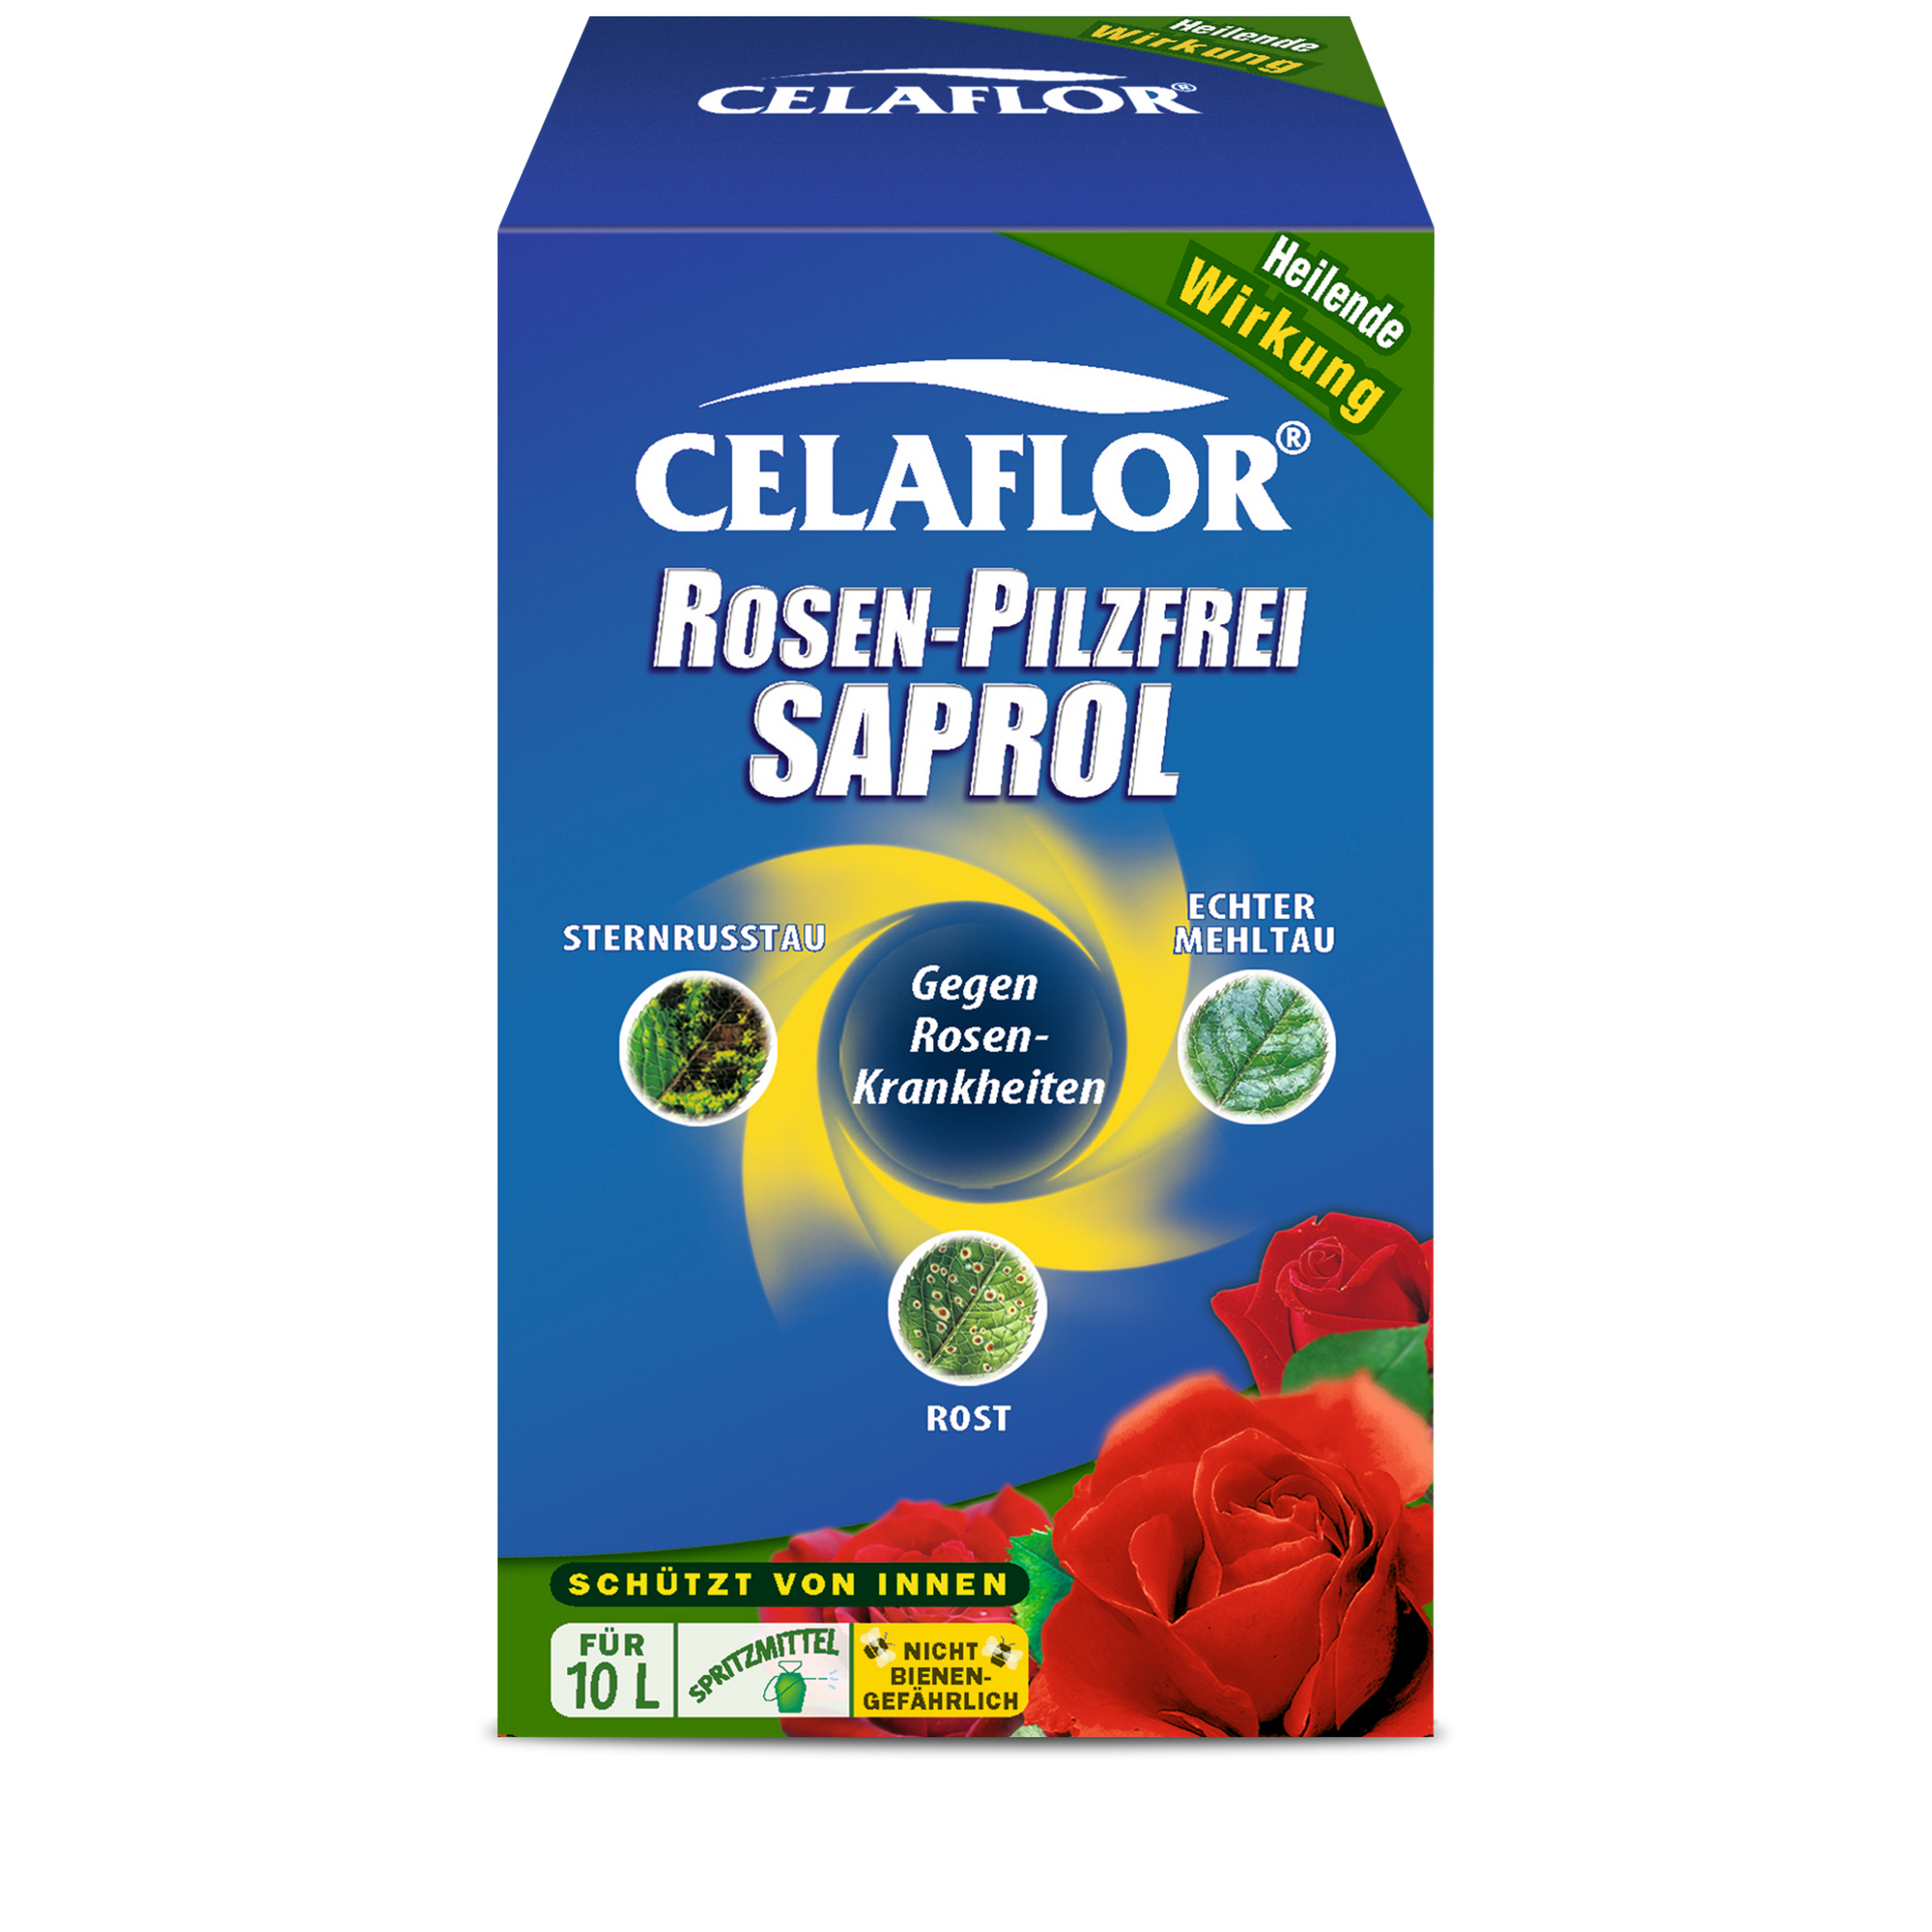 Rosen-Pilzfrei Saprol® 100 ml + product picture